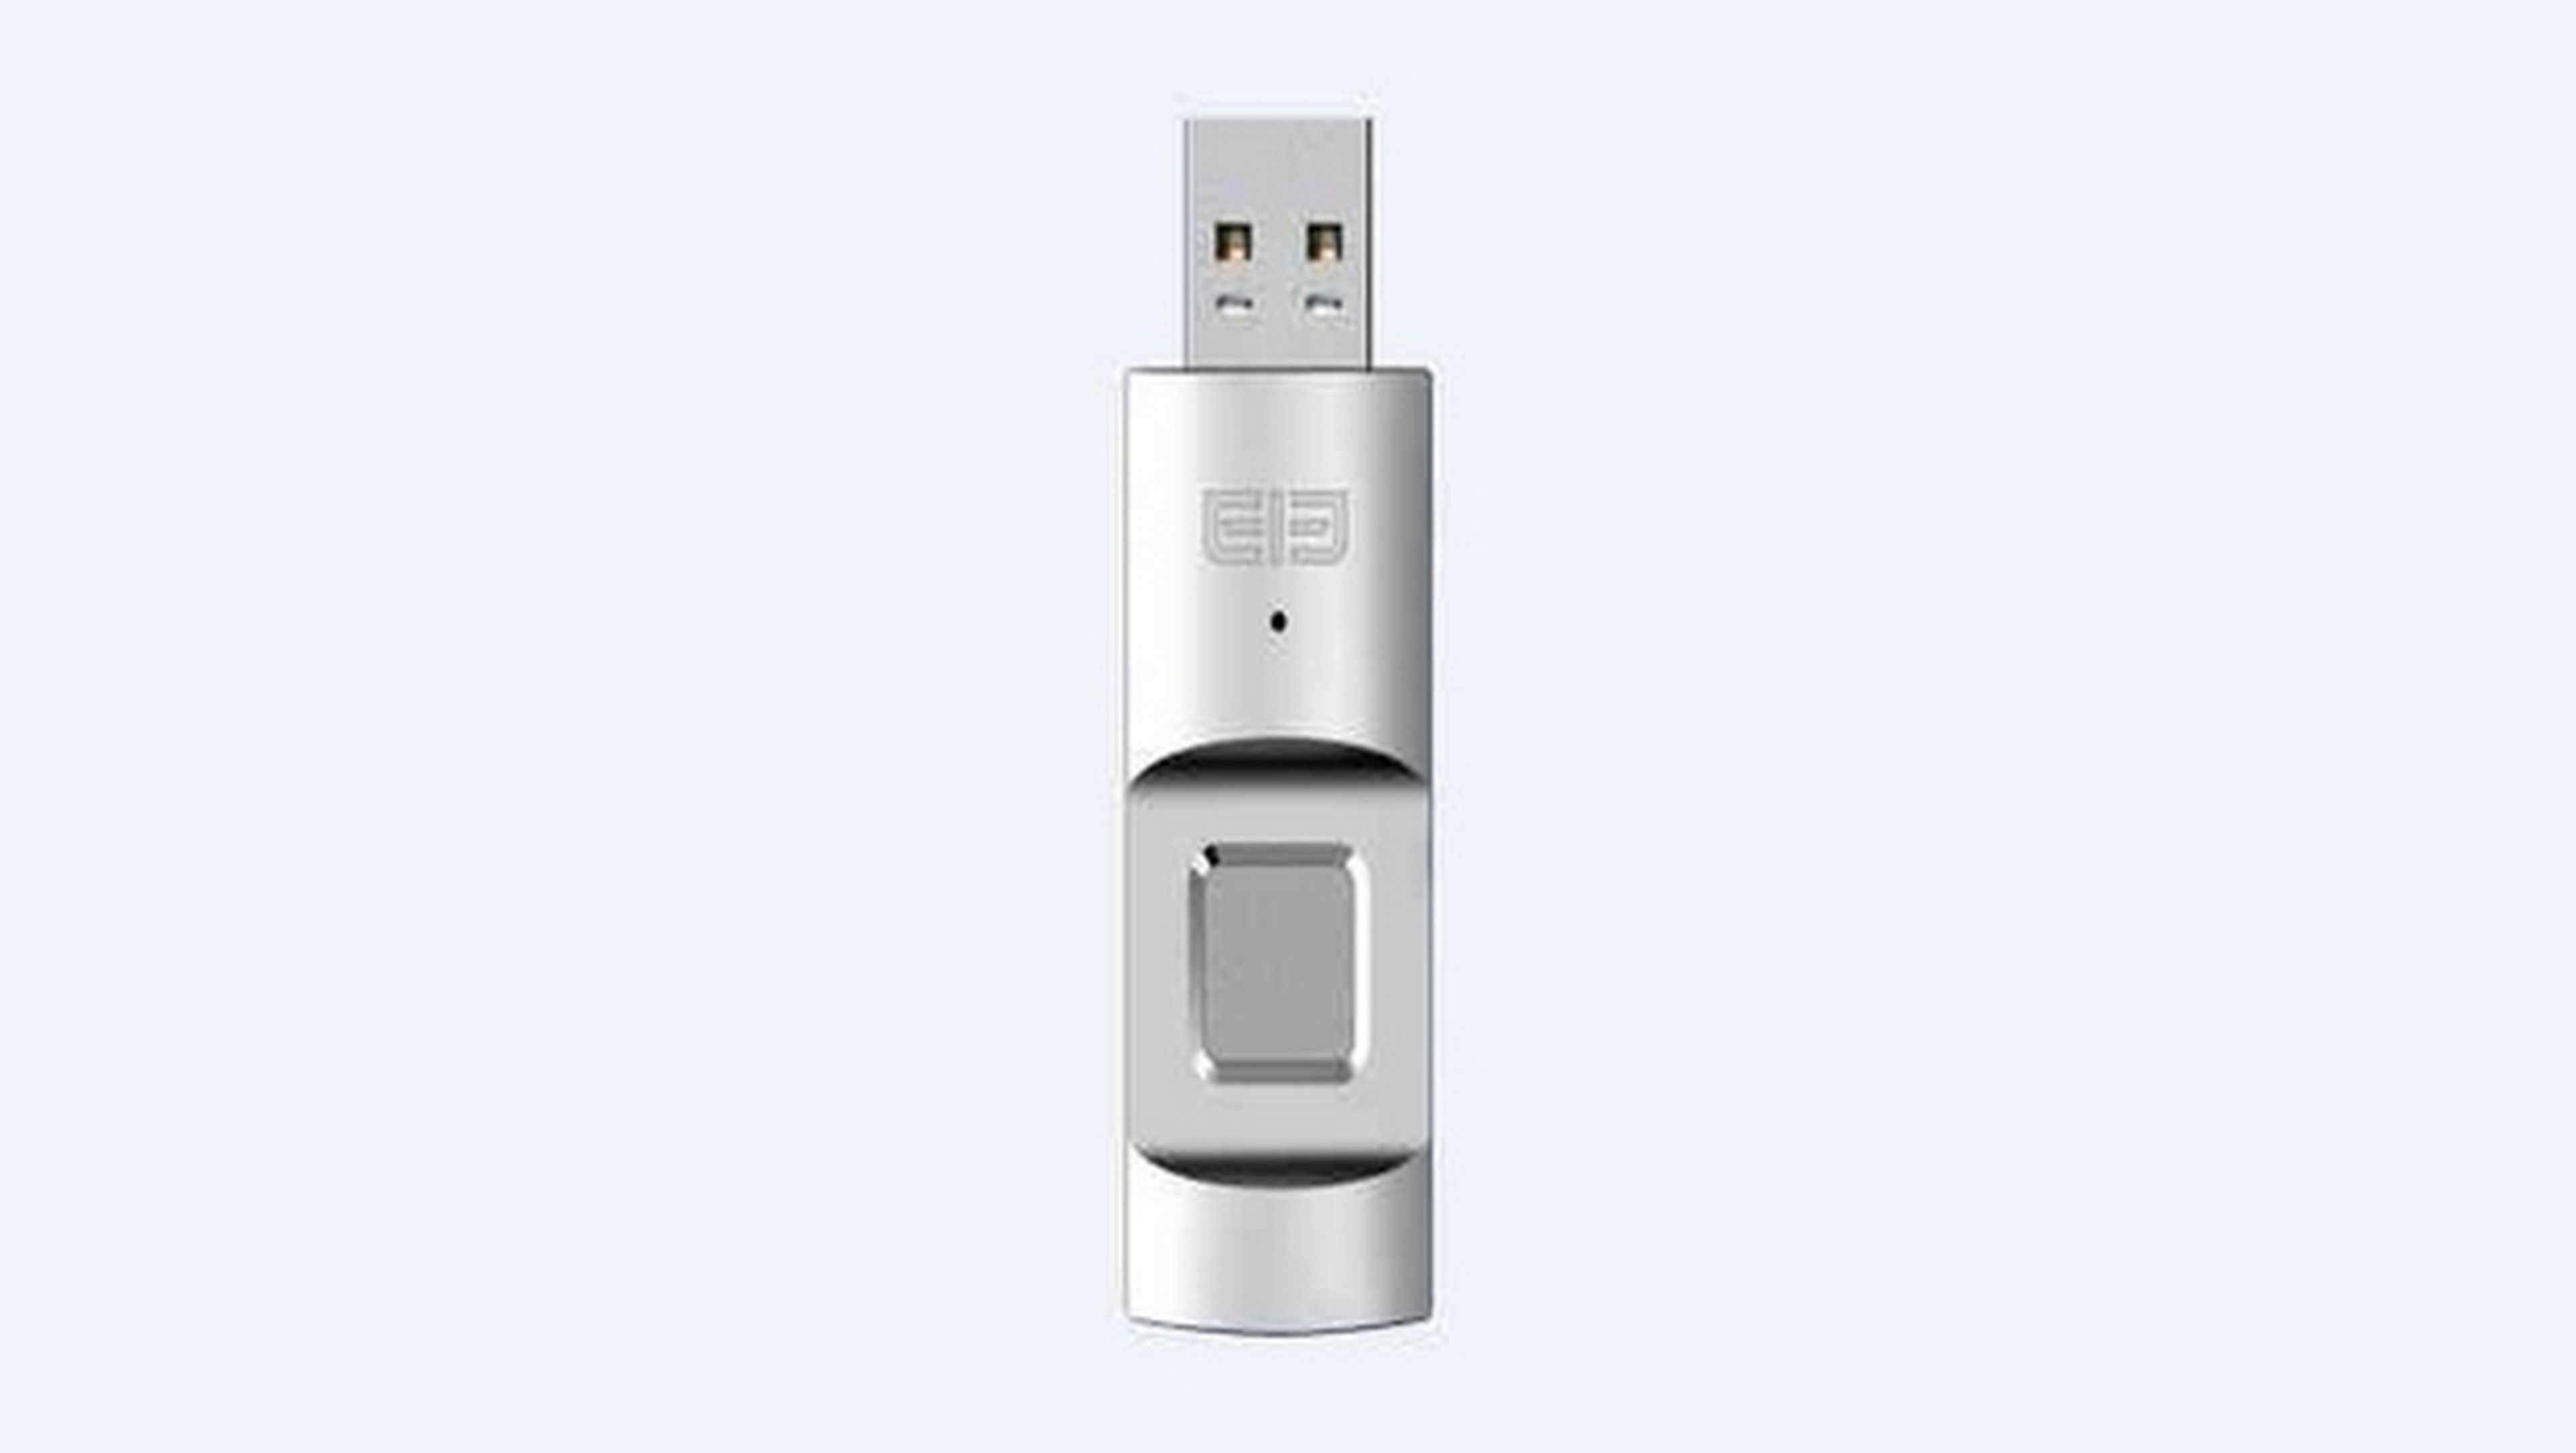 Sale a la venta USB Killer 2.0, el pendrive que electrocuta PCs